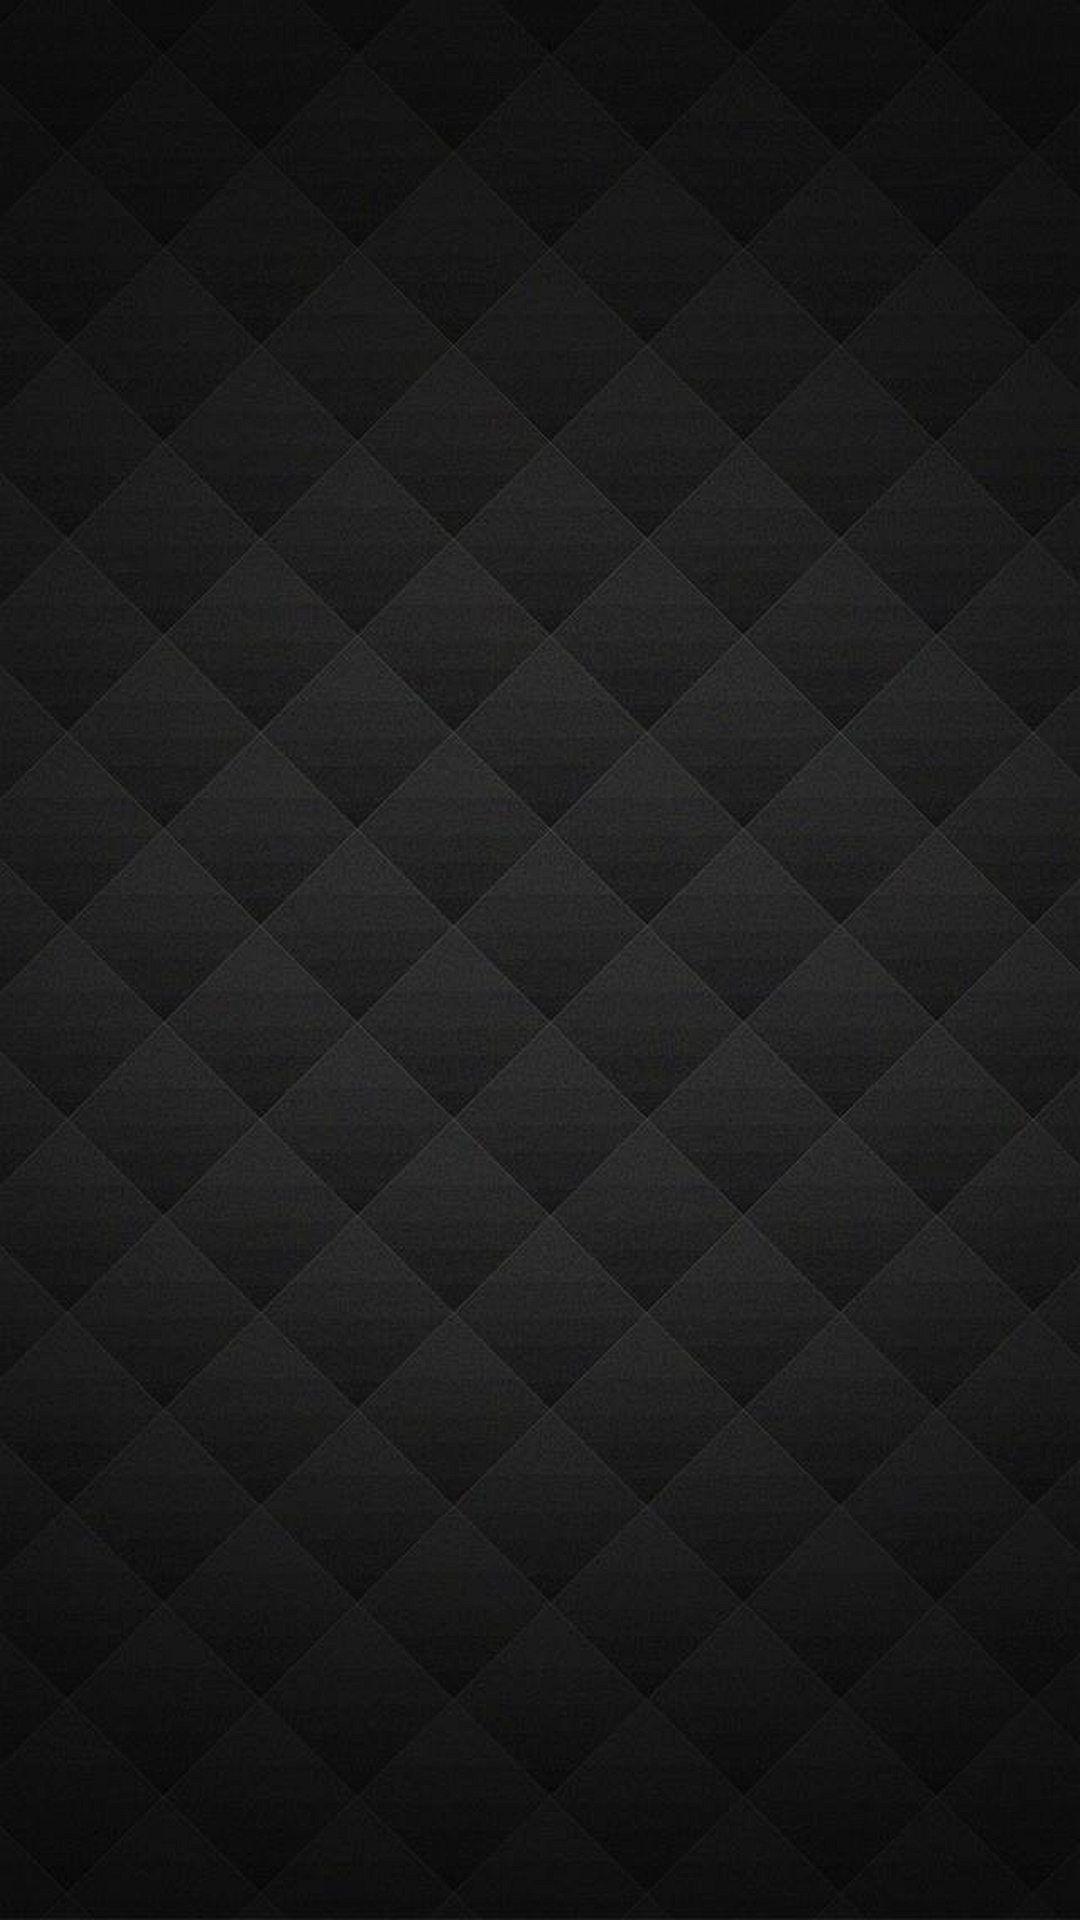 35 Gambar Wallpaper Hd Black Smartphone terbaru 2020